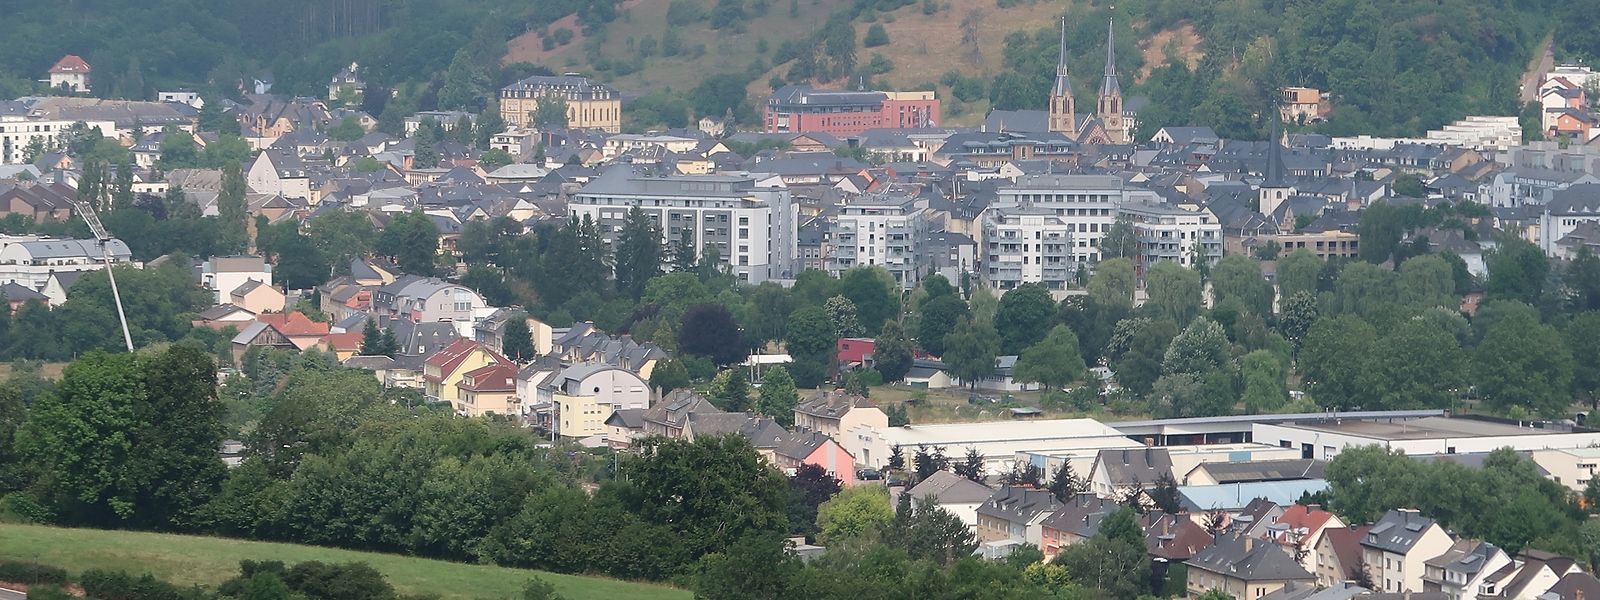 Auch wenn die Nordstad urbanistisch bereits zu großen Teilen zusammengewachsen ist, steht ihre politische Vereinigung von Bettendorf, Diekirch, Erpeldingen/Sauer, Ettelbrück und Schieren derzeit auf der Kippe.